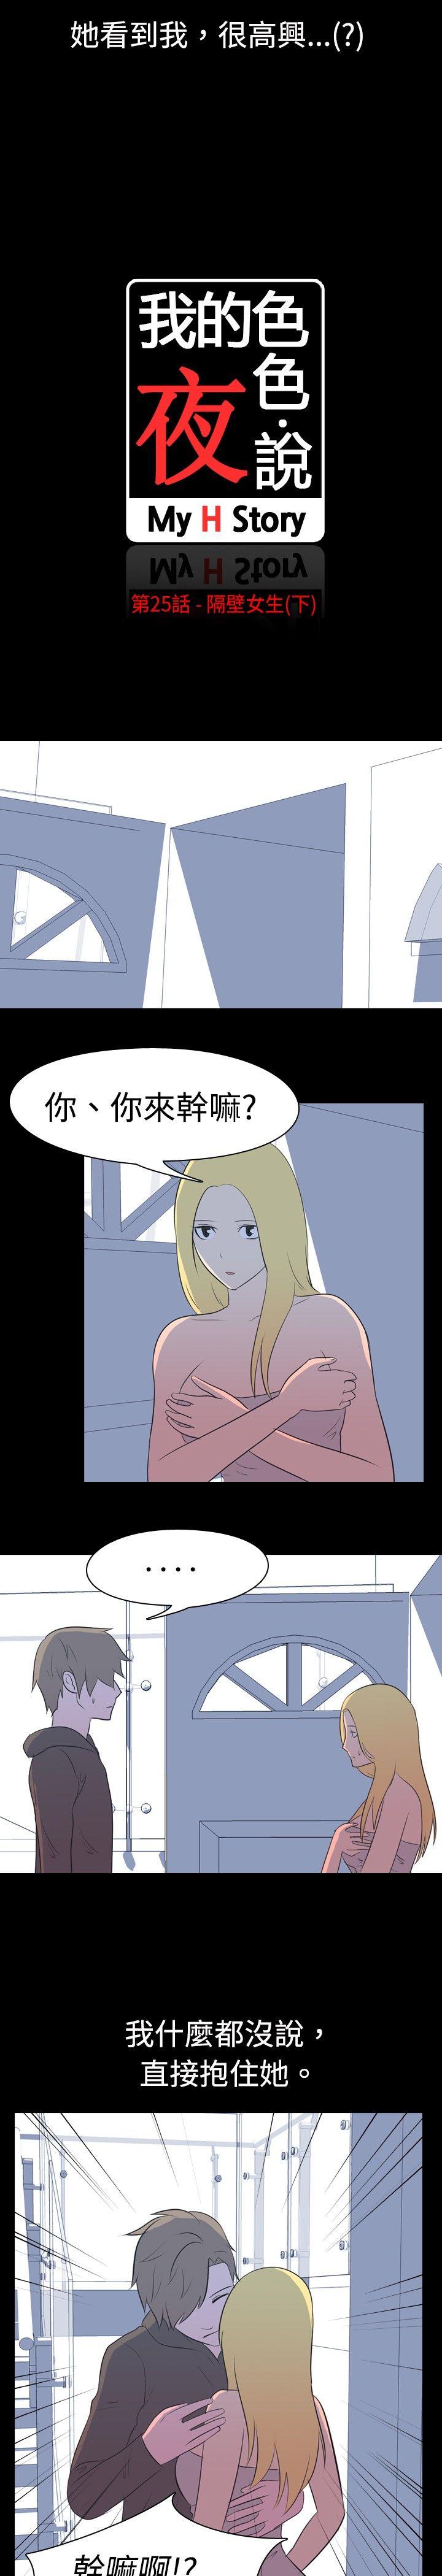 韩国污漫画 我的色色夜說 第25话-隔壁女生(下) 2